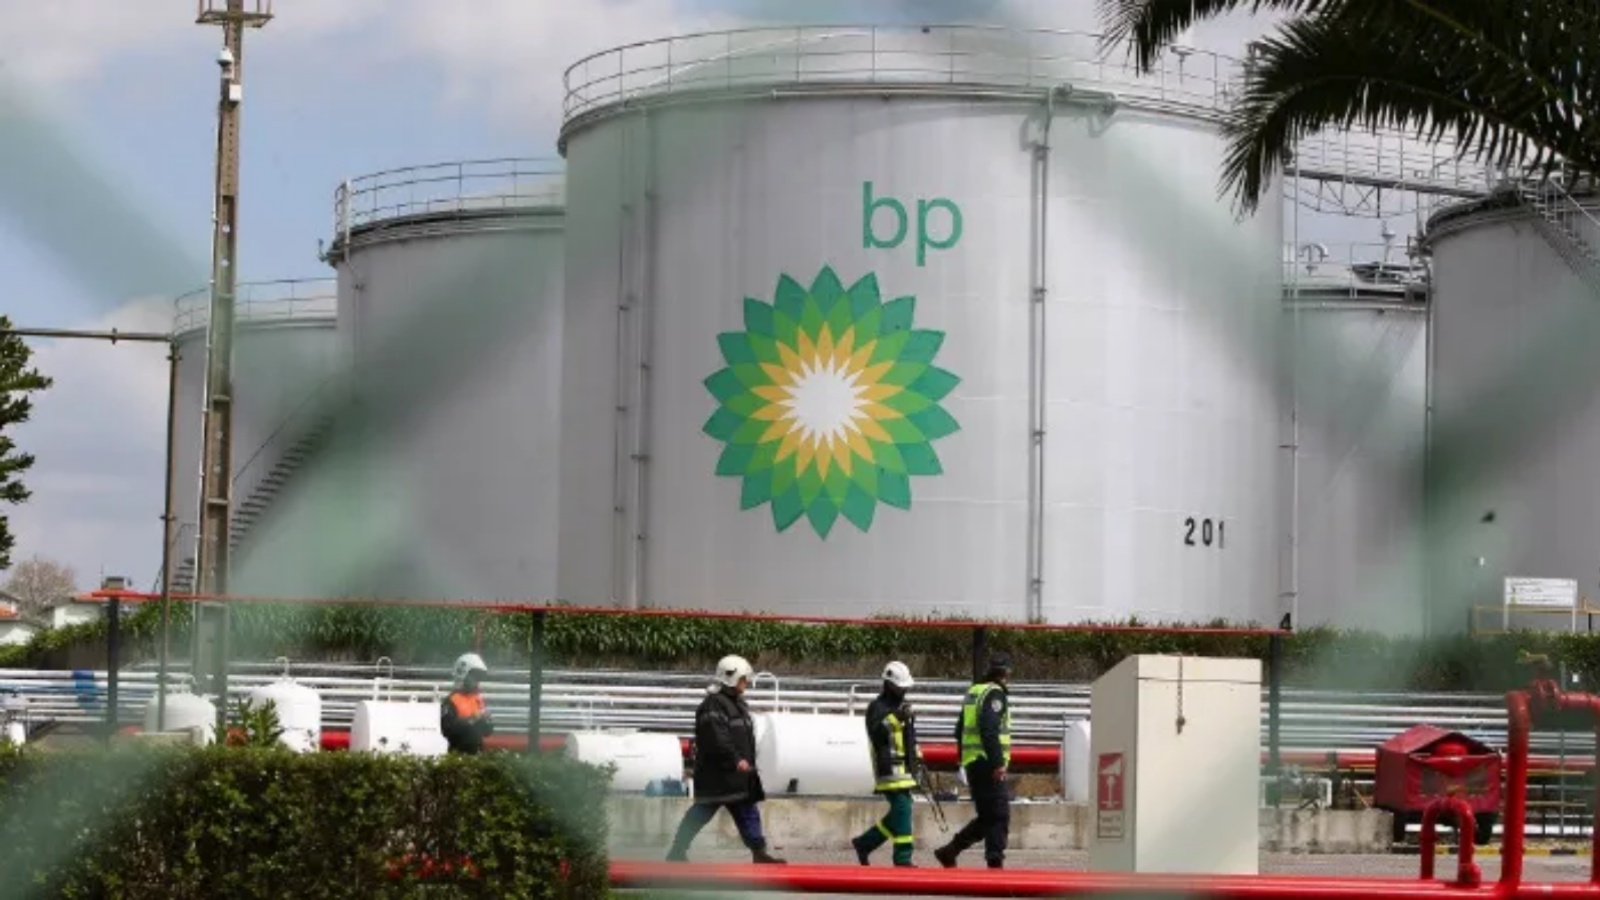 مجموعة بريتش بتروليوم (BP) البريطانية العملاقة للنفط والغاز